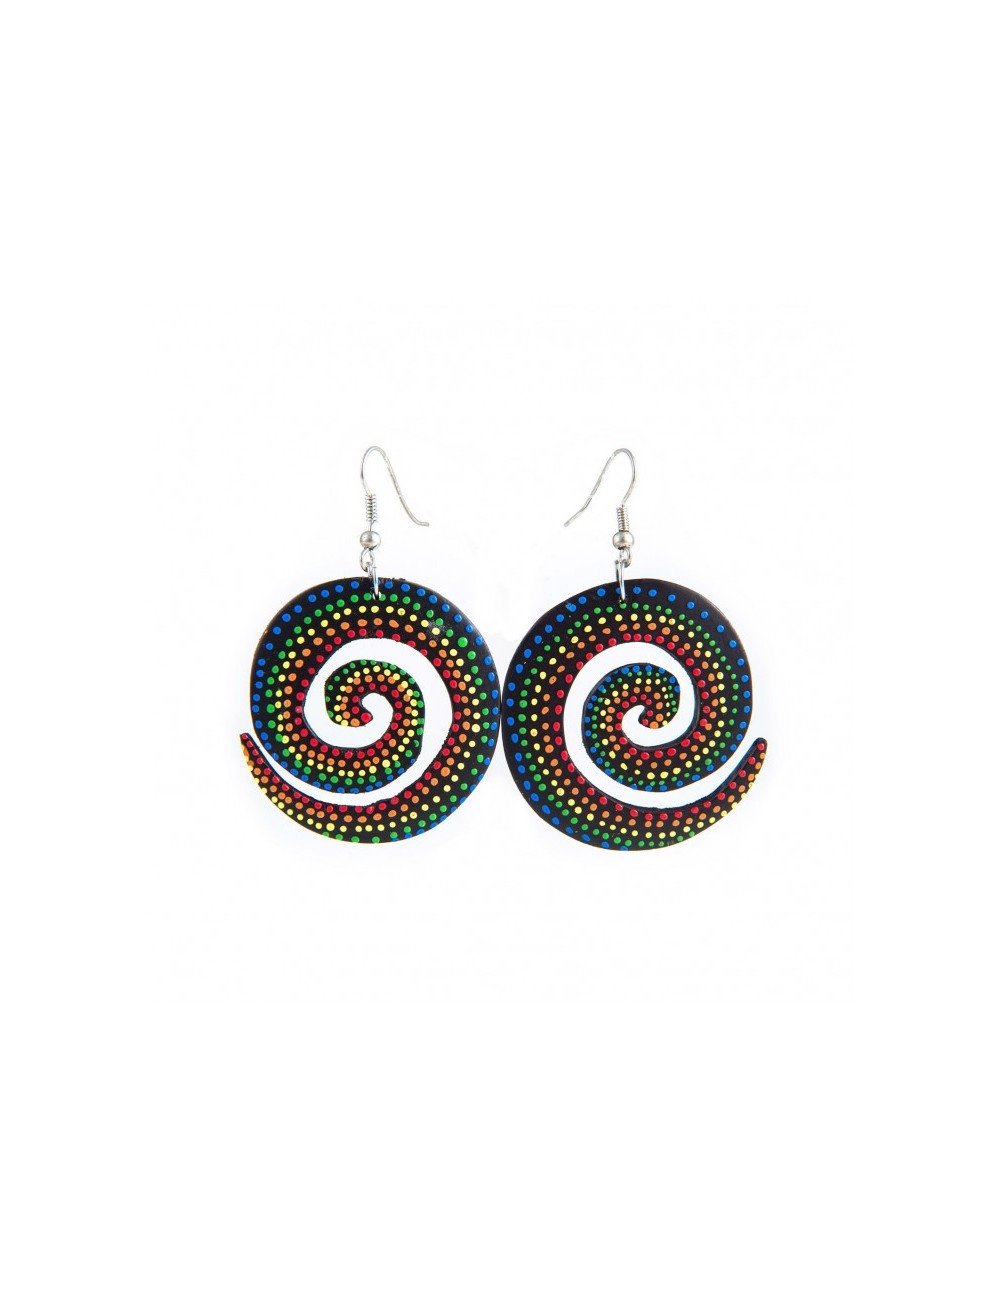 Boucles d'oreilles de bois tropical en forme de spirale et peintes en couleurs.